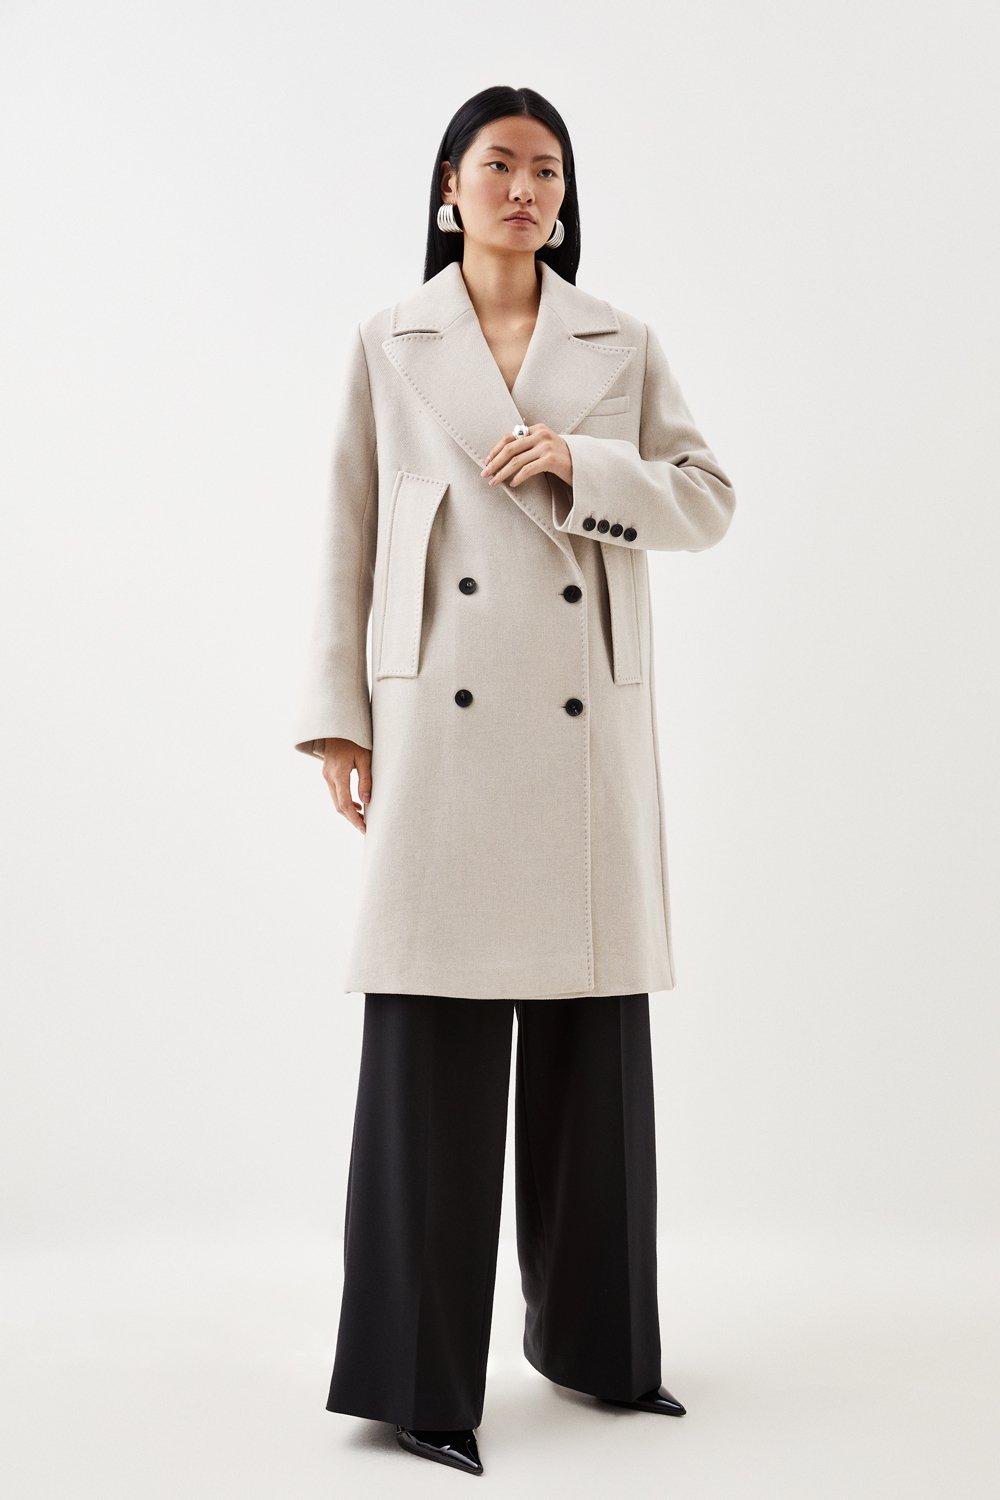 Jackets & Coats | Italian Manteco Wool Cape Over Coat | KarenMillen